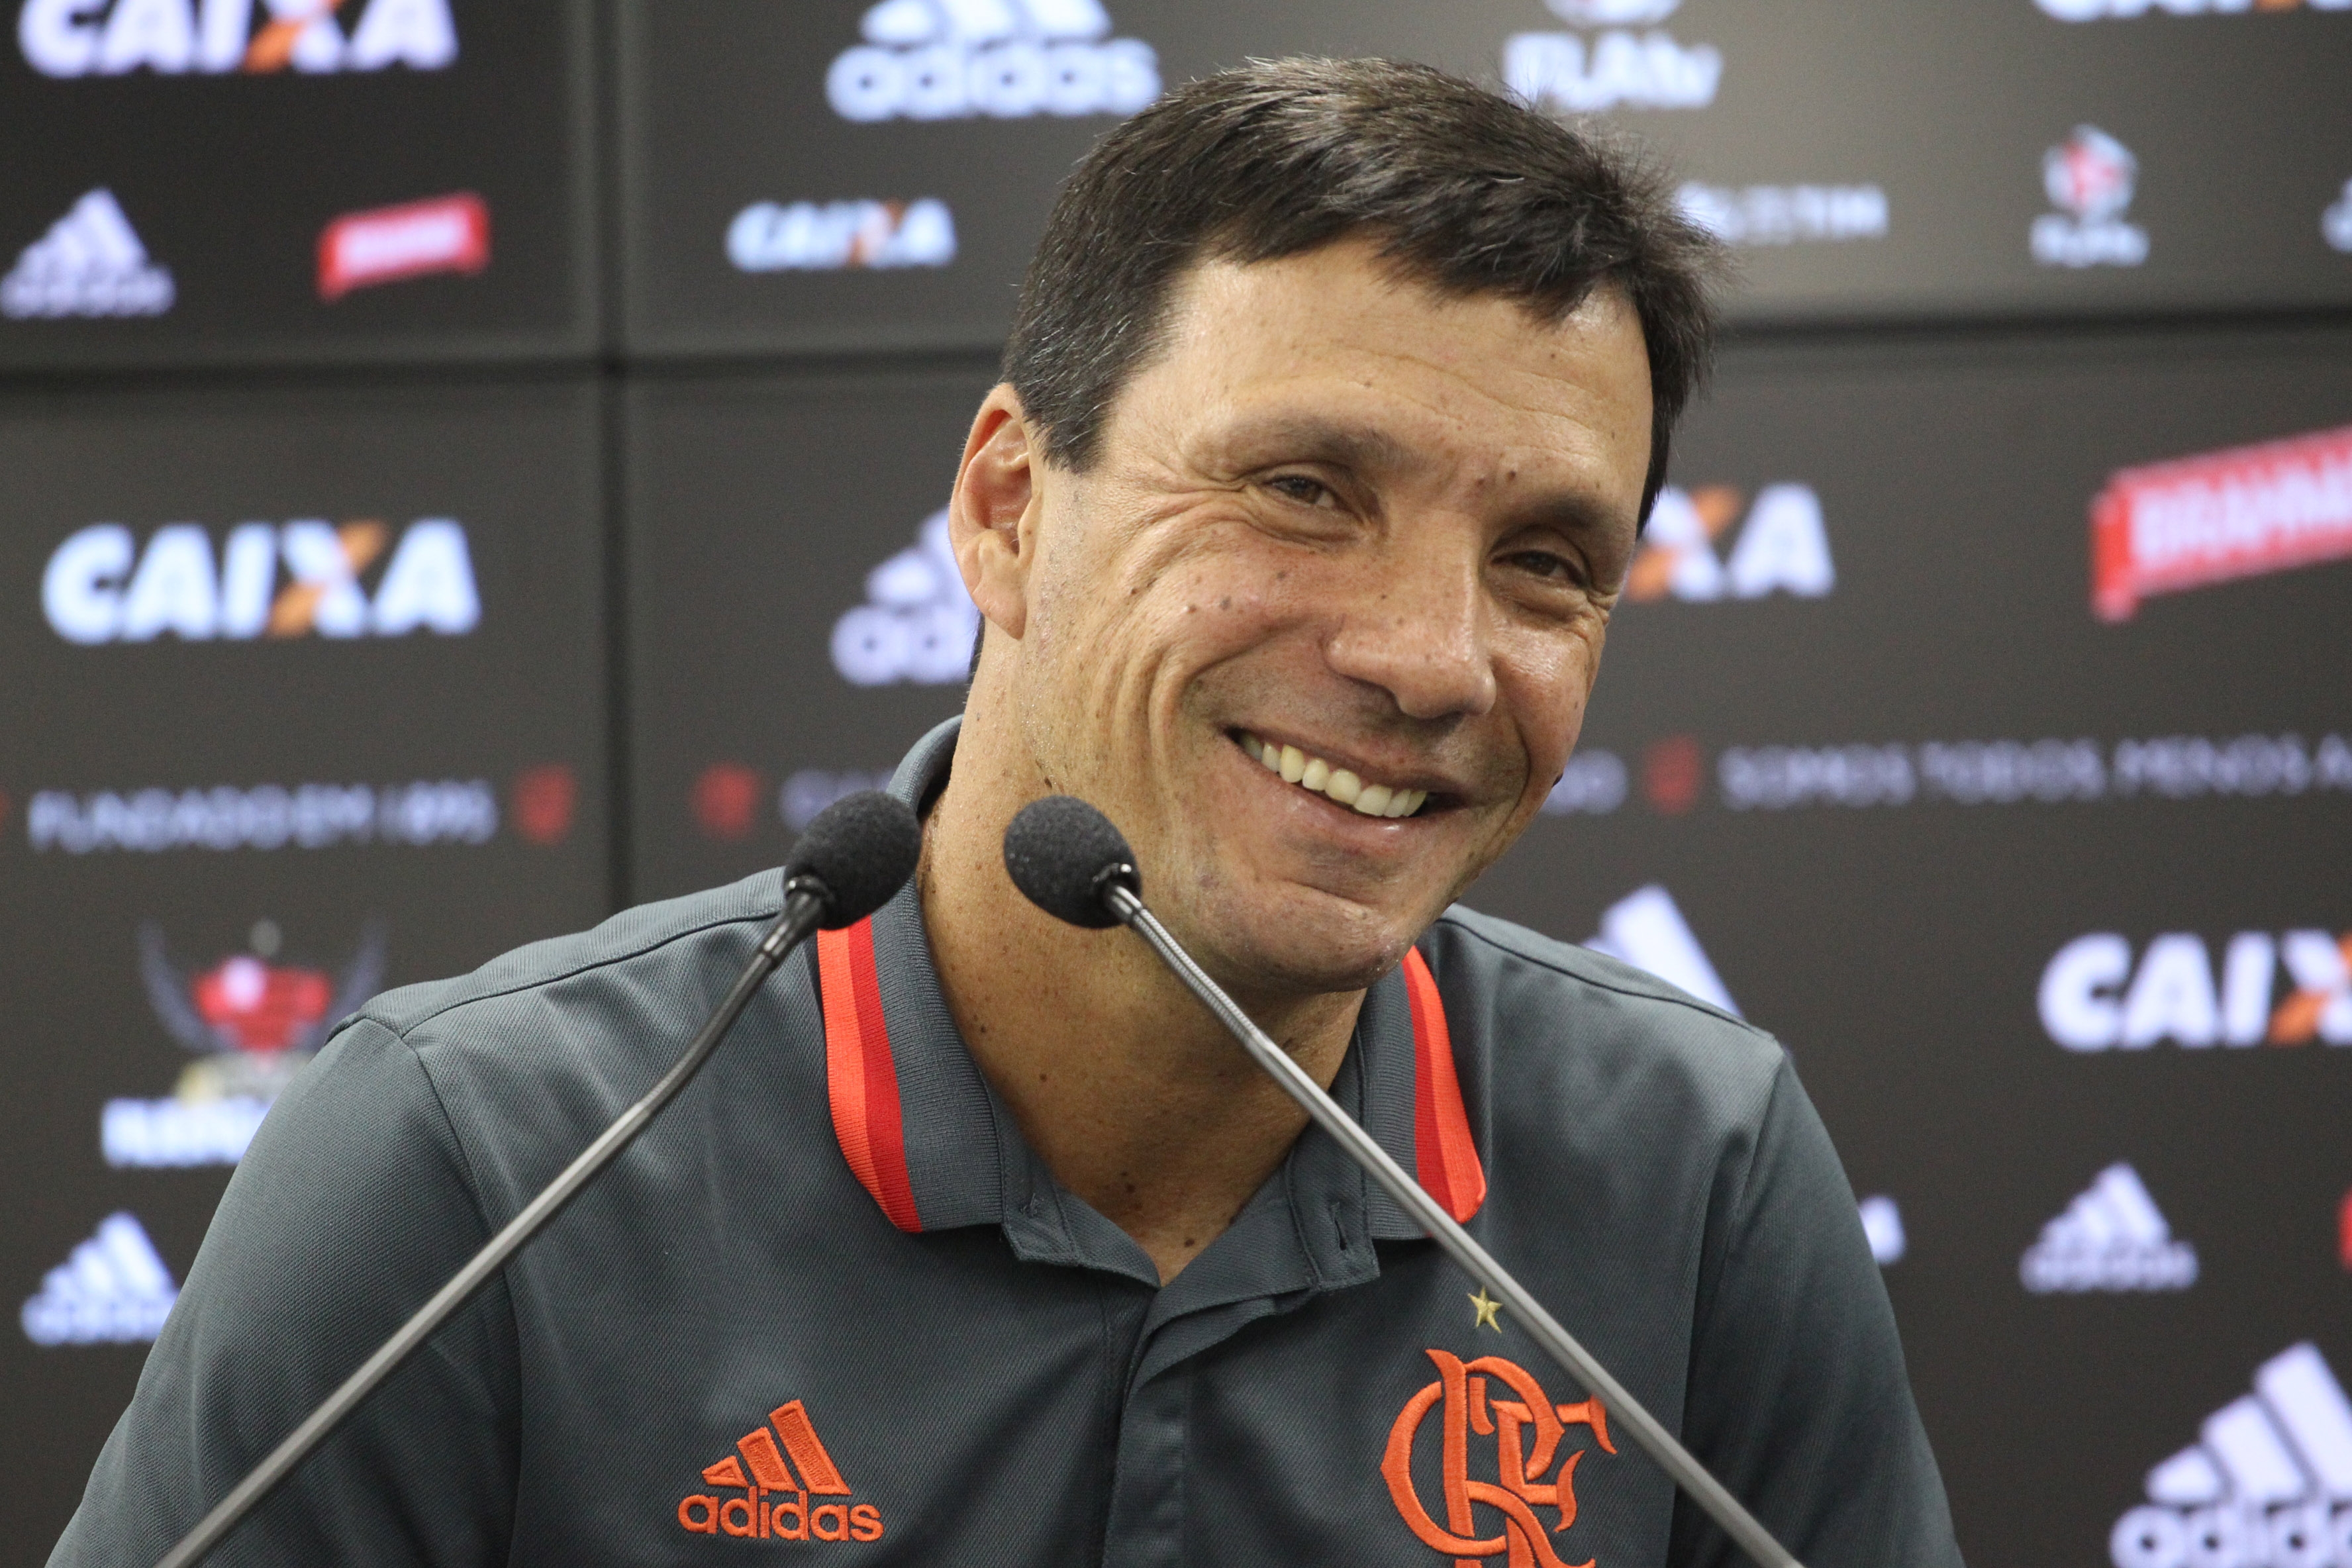 Fla tem conversas adiantadas com reforços para 2017 - Flamengo